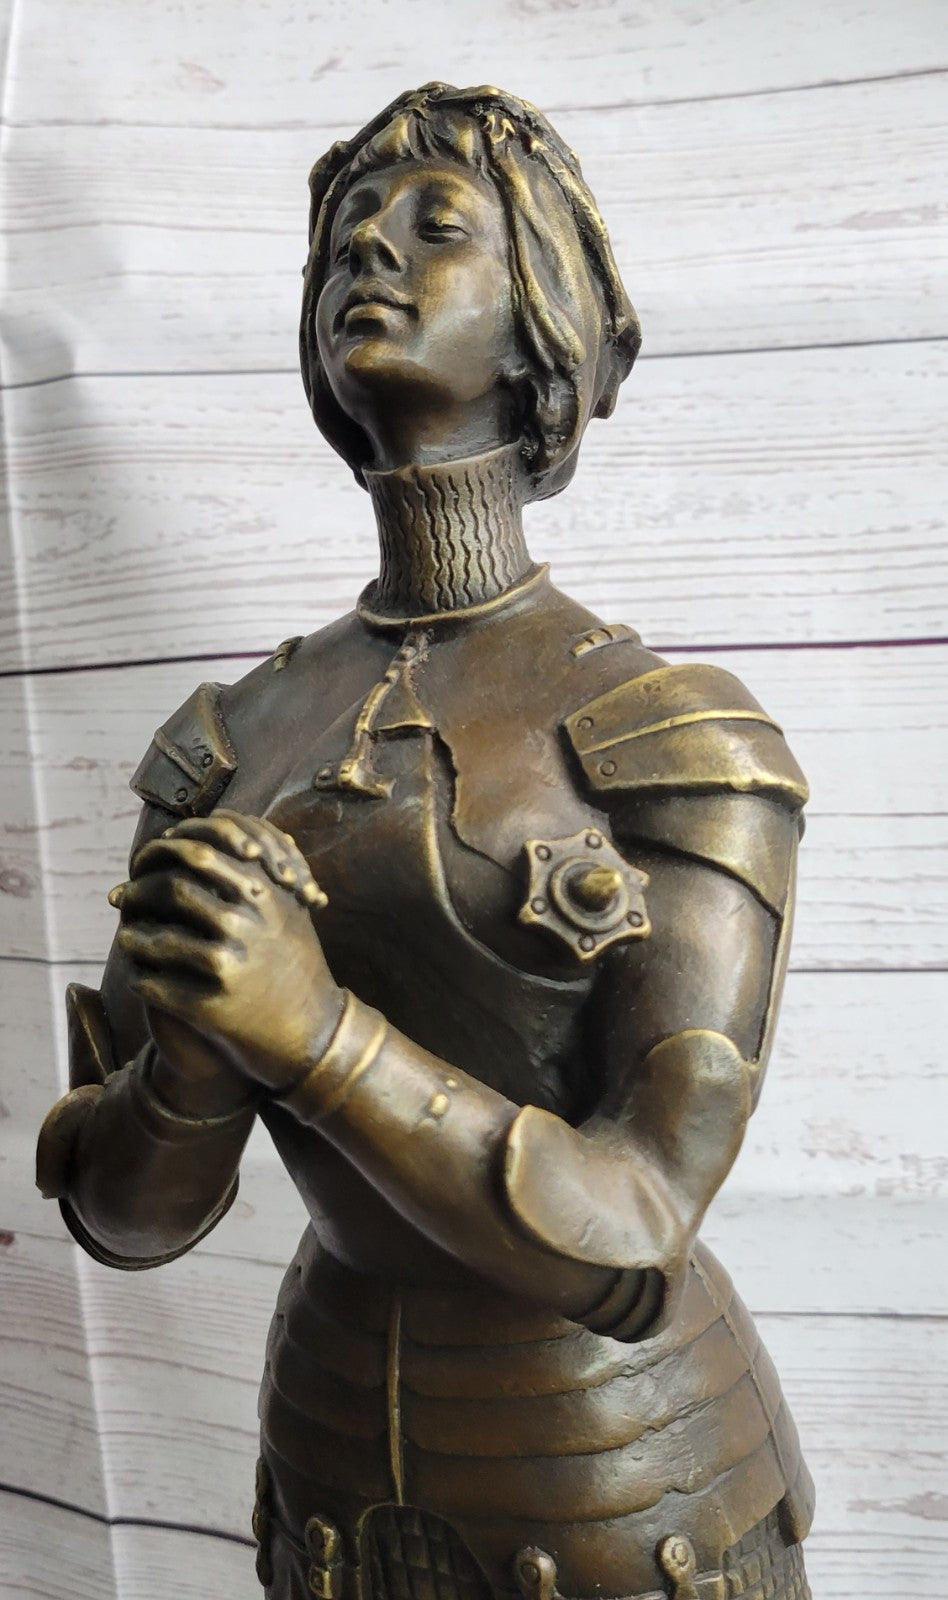 MAID ORLEANS FRENCH PRAYING HEROINE SOLDIER Bronze Sculpture Statue Figurine T